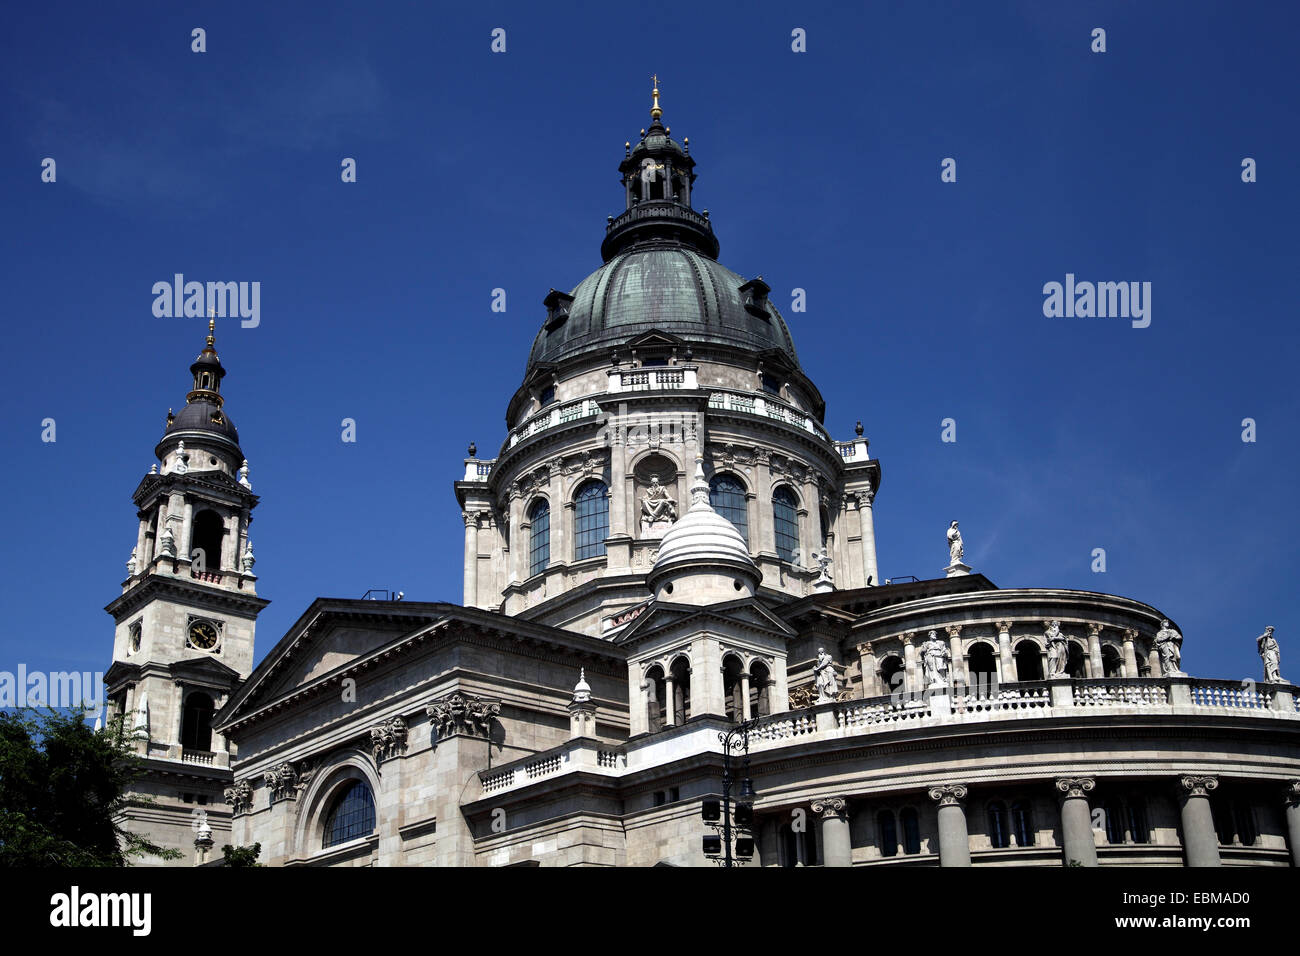 Vue paysage de la Basilique, le centre de Pest Budapest Hongrie contre ciel bleu profond Banque D'Images